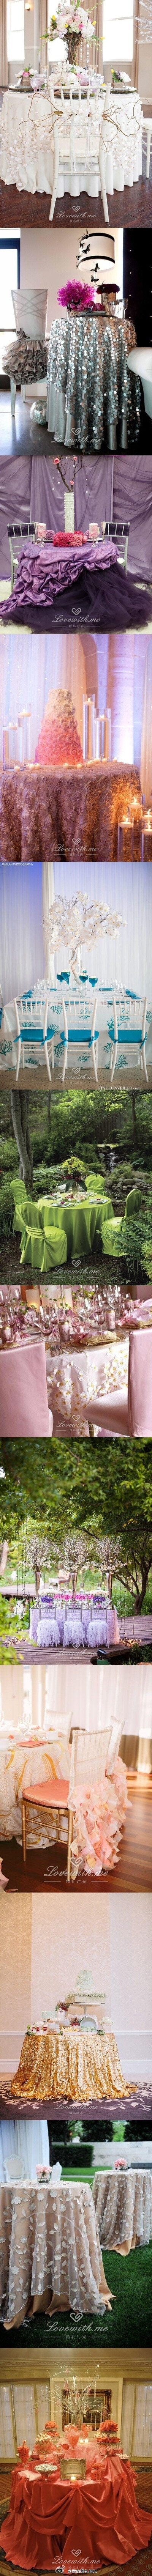 #婚礼布置# 12款精美绝伦的婚宴桌布灵感，这12款桌布，简直比婚纱还美~http://www.lovewith.me/share/detail/27040/all